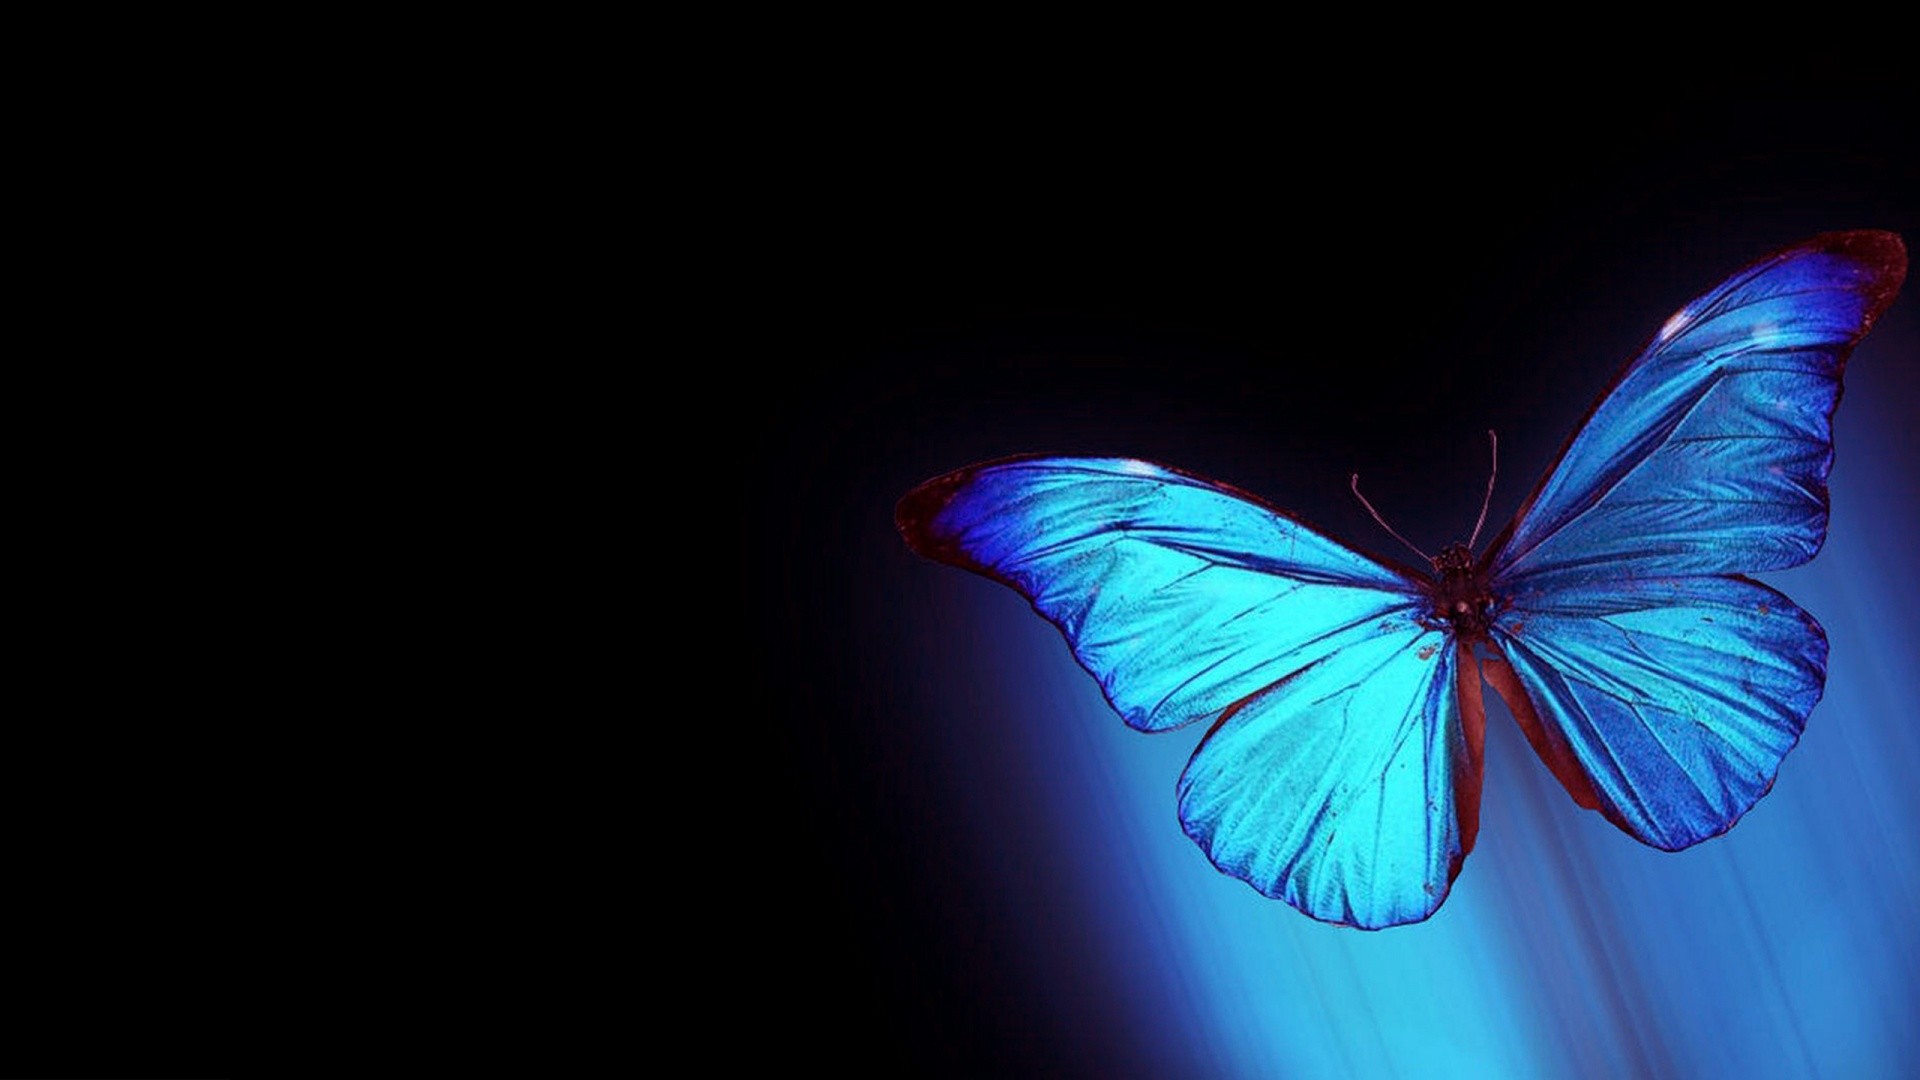 Tải ngay hình nền bướm trên desktop của bạn để tăng thêm giá trị cho màn hình máy tính. Hình nền bướm đẹp này sẽ làm cho màn hình của bạn trở nên bắt mắt và đầy màu sắc. Đừng chần chừ gì nữa, hãy cập nhật hình nền bướm đẹp này ngay lập tức!